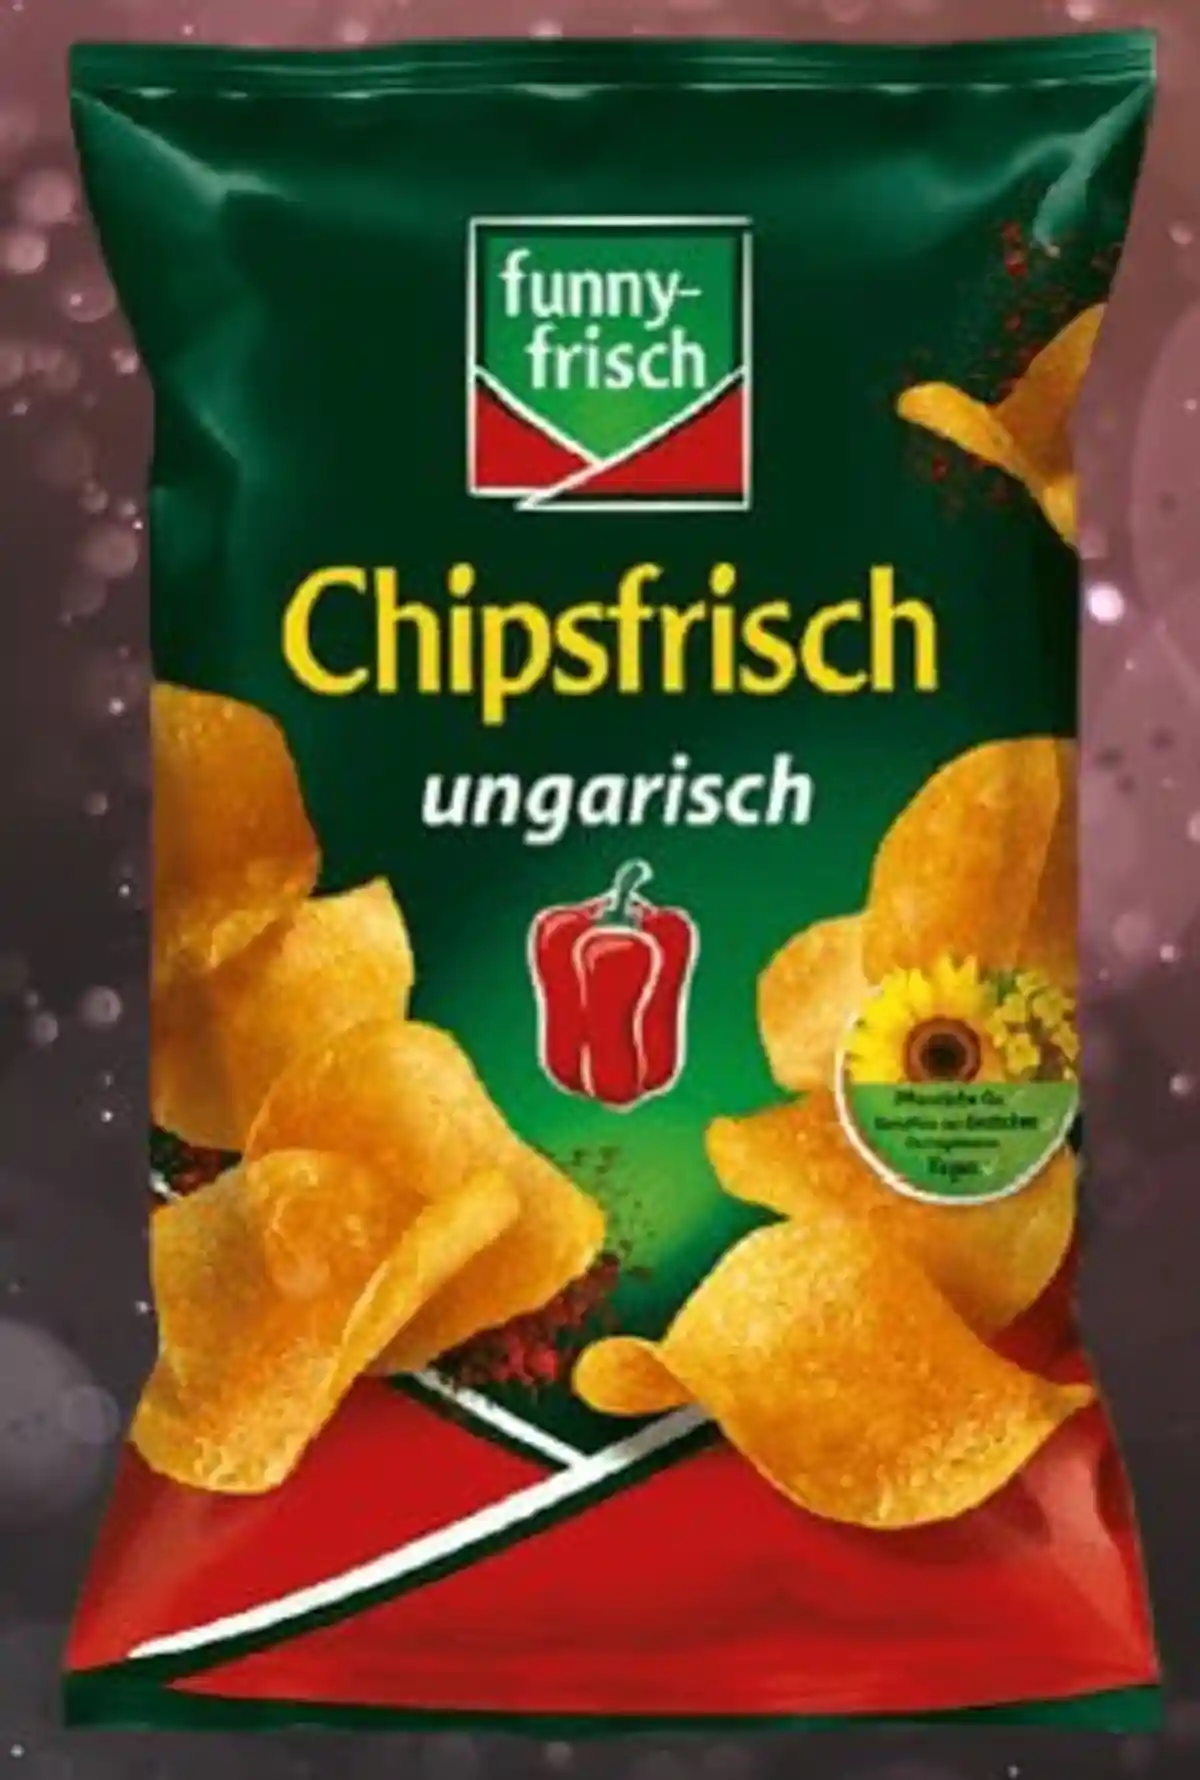 Отзыв чипсов в Германии. Фото: aussiedlerbote.de